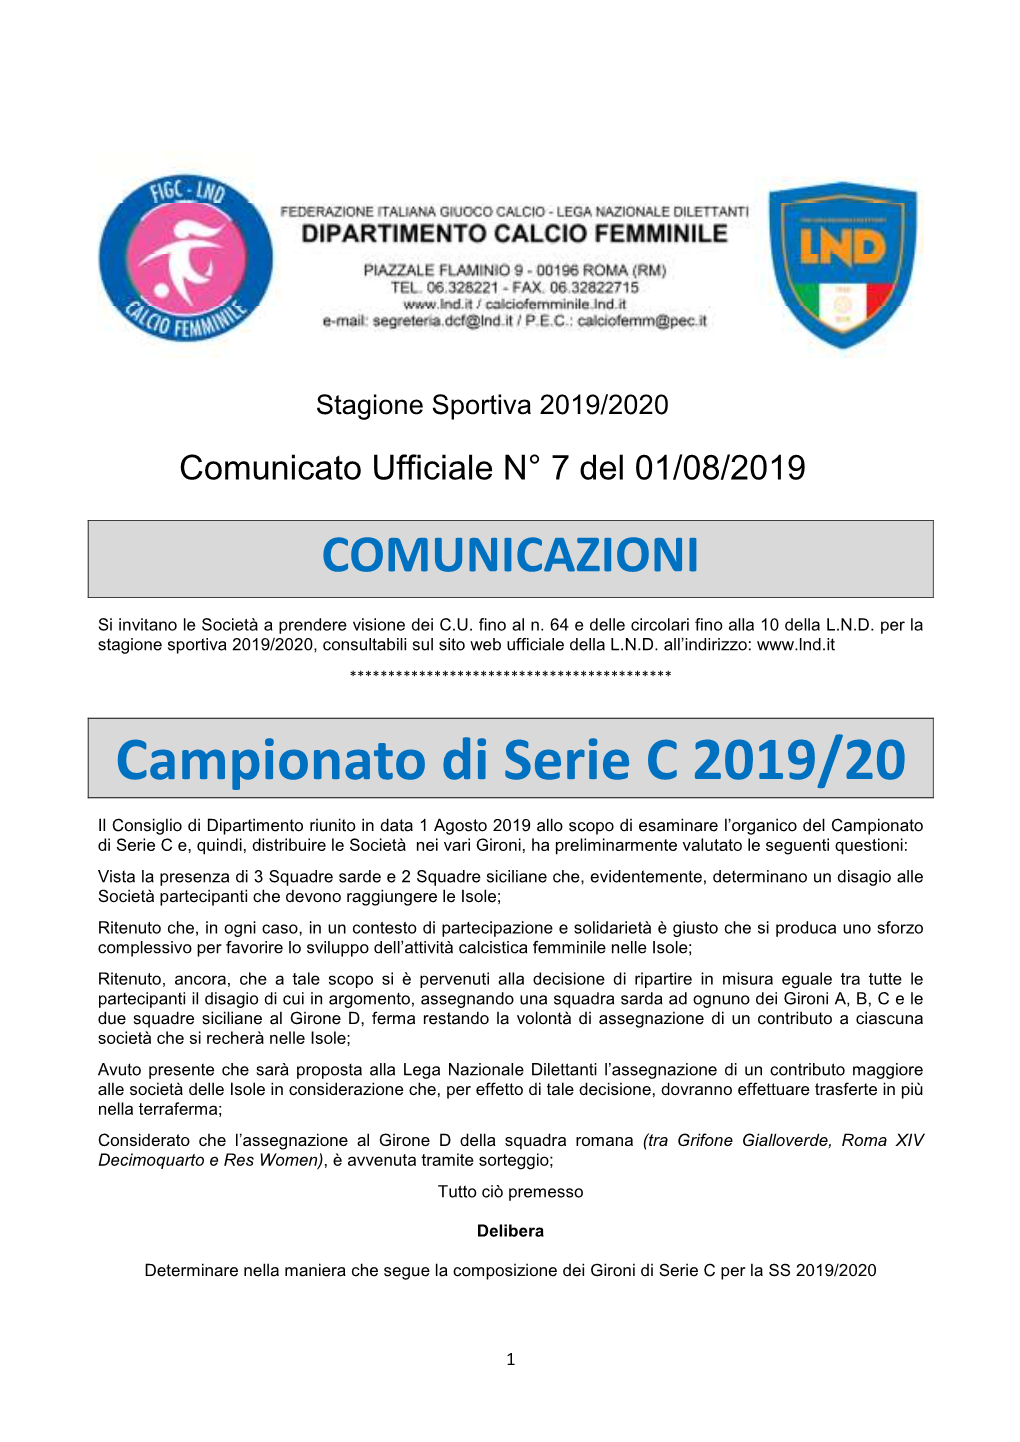 Campionato Di Serie C 2019/20